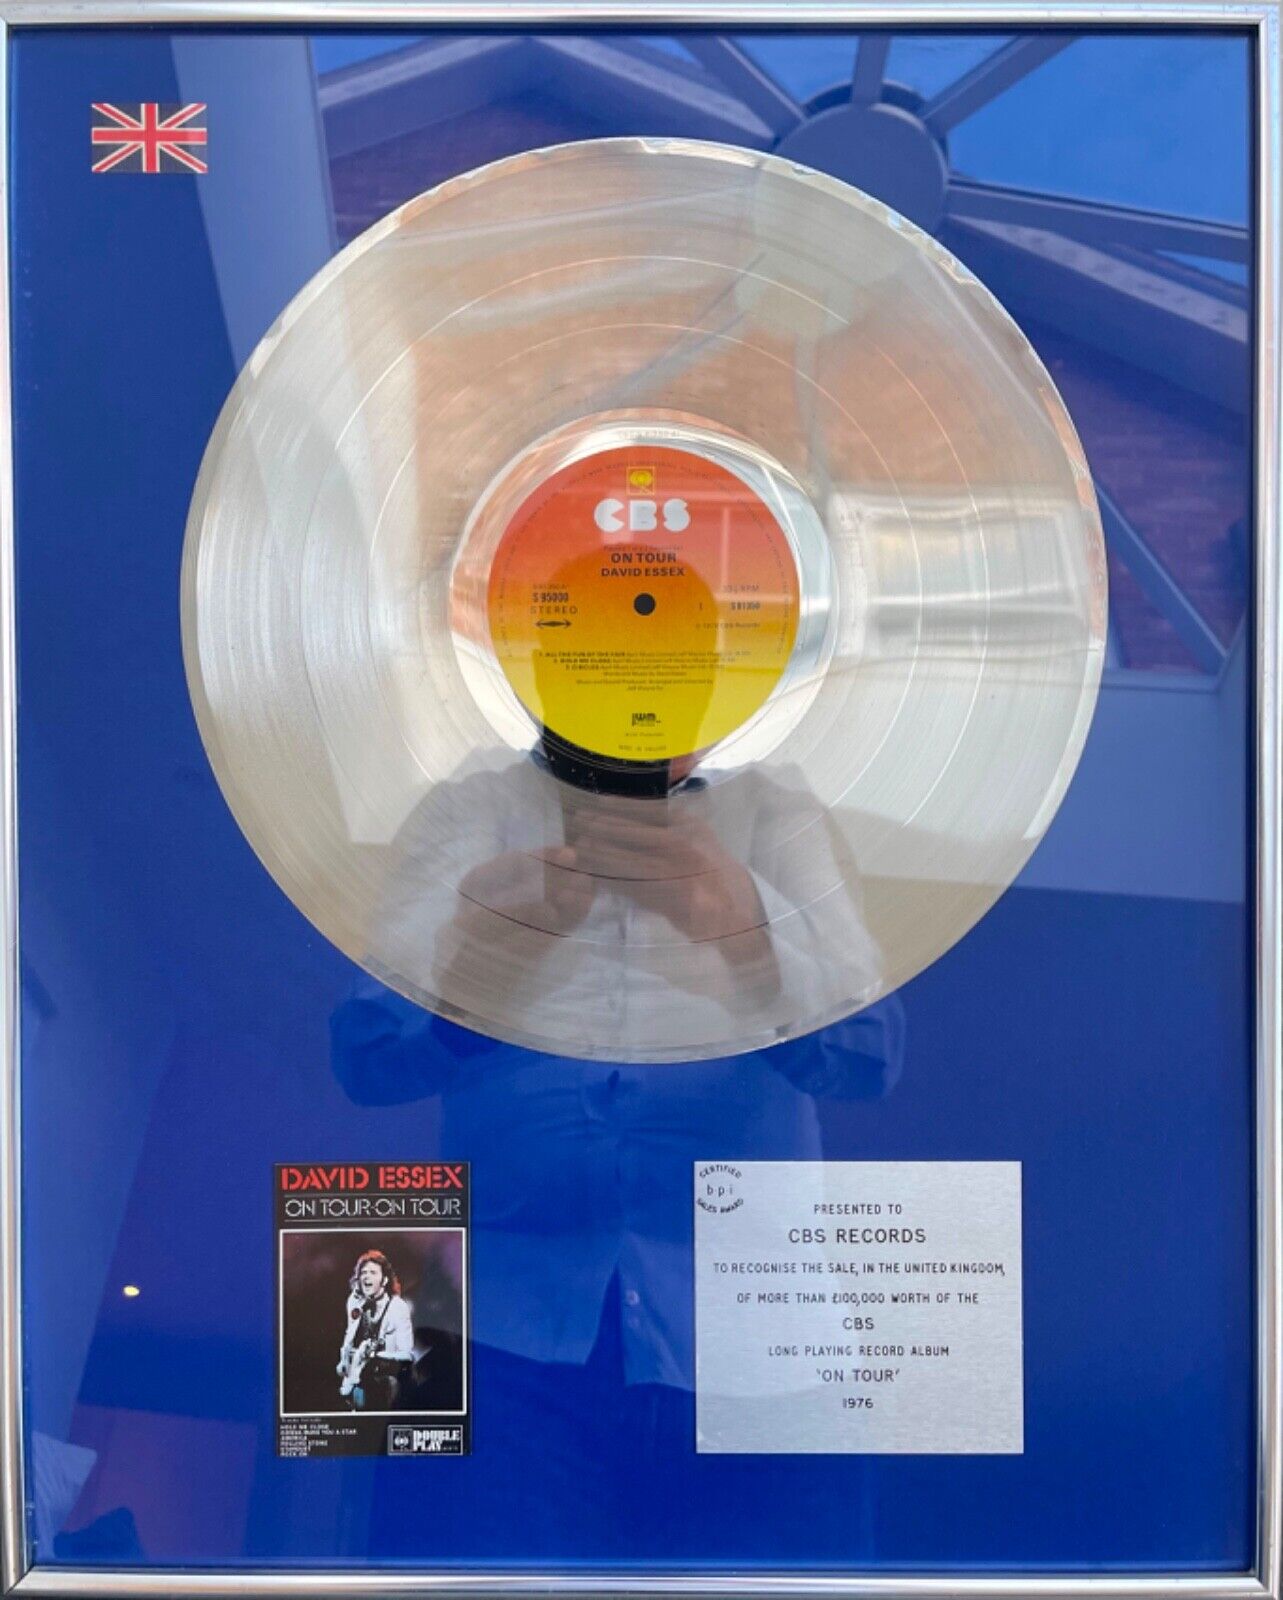 BPI Silver Disc Award, David Essex - \'On Tour\' Album, Hand Signed Card And COA